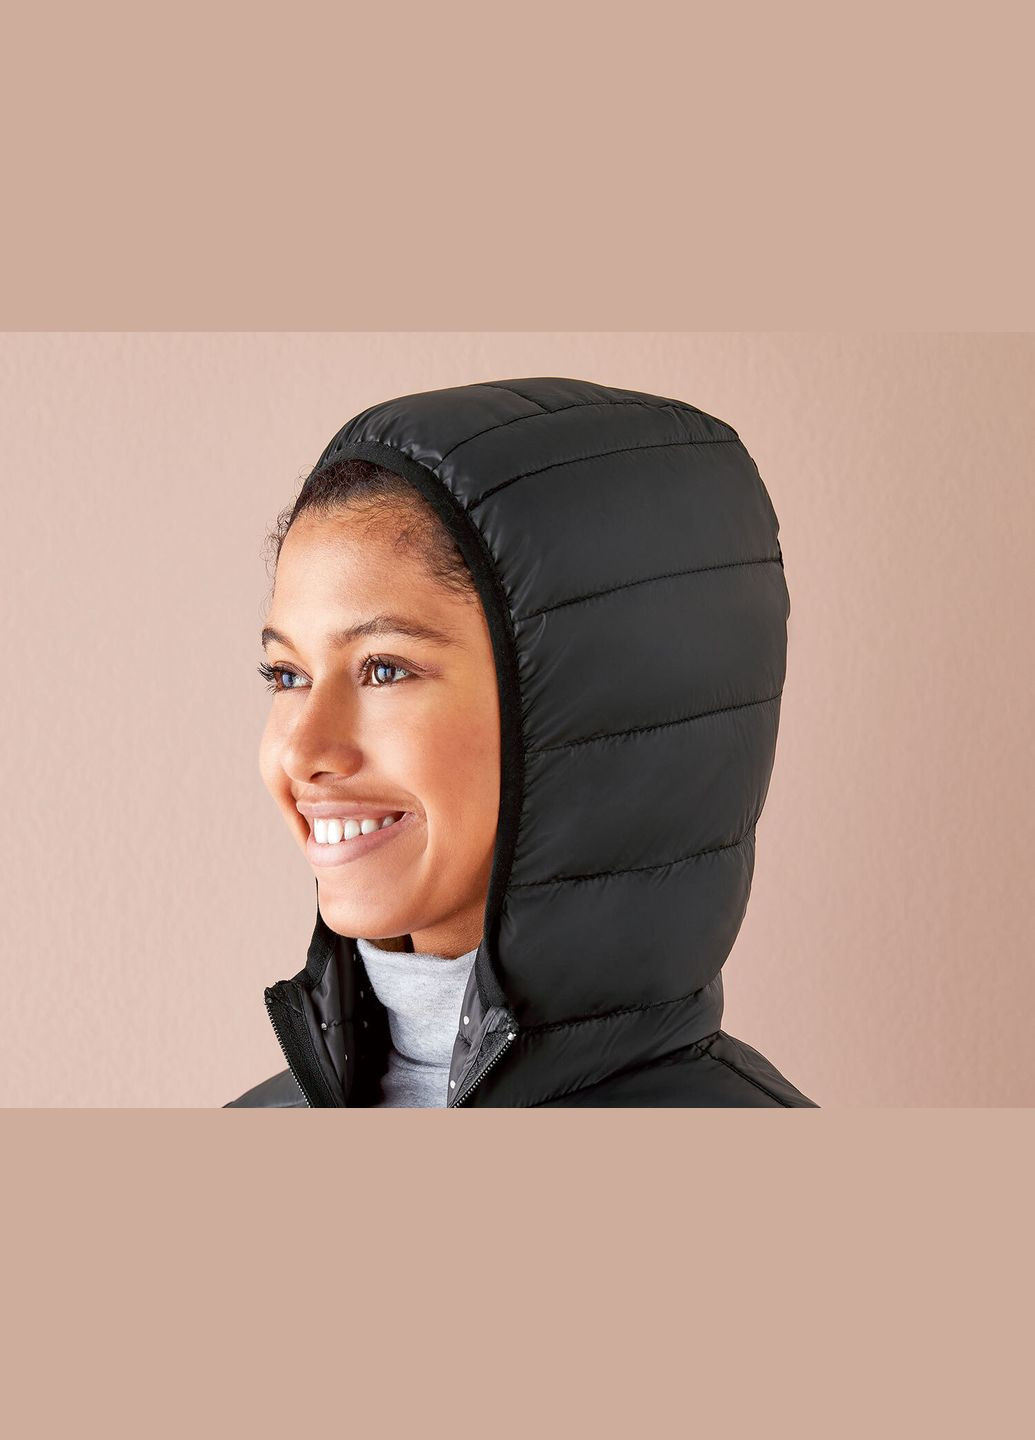 Черная демисезонная куртка демисезонная для беременных и слингокуртка 3 в 1 для женщины bionic-finih® eco 357573 s Esmara